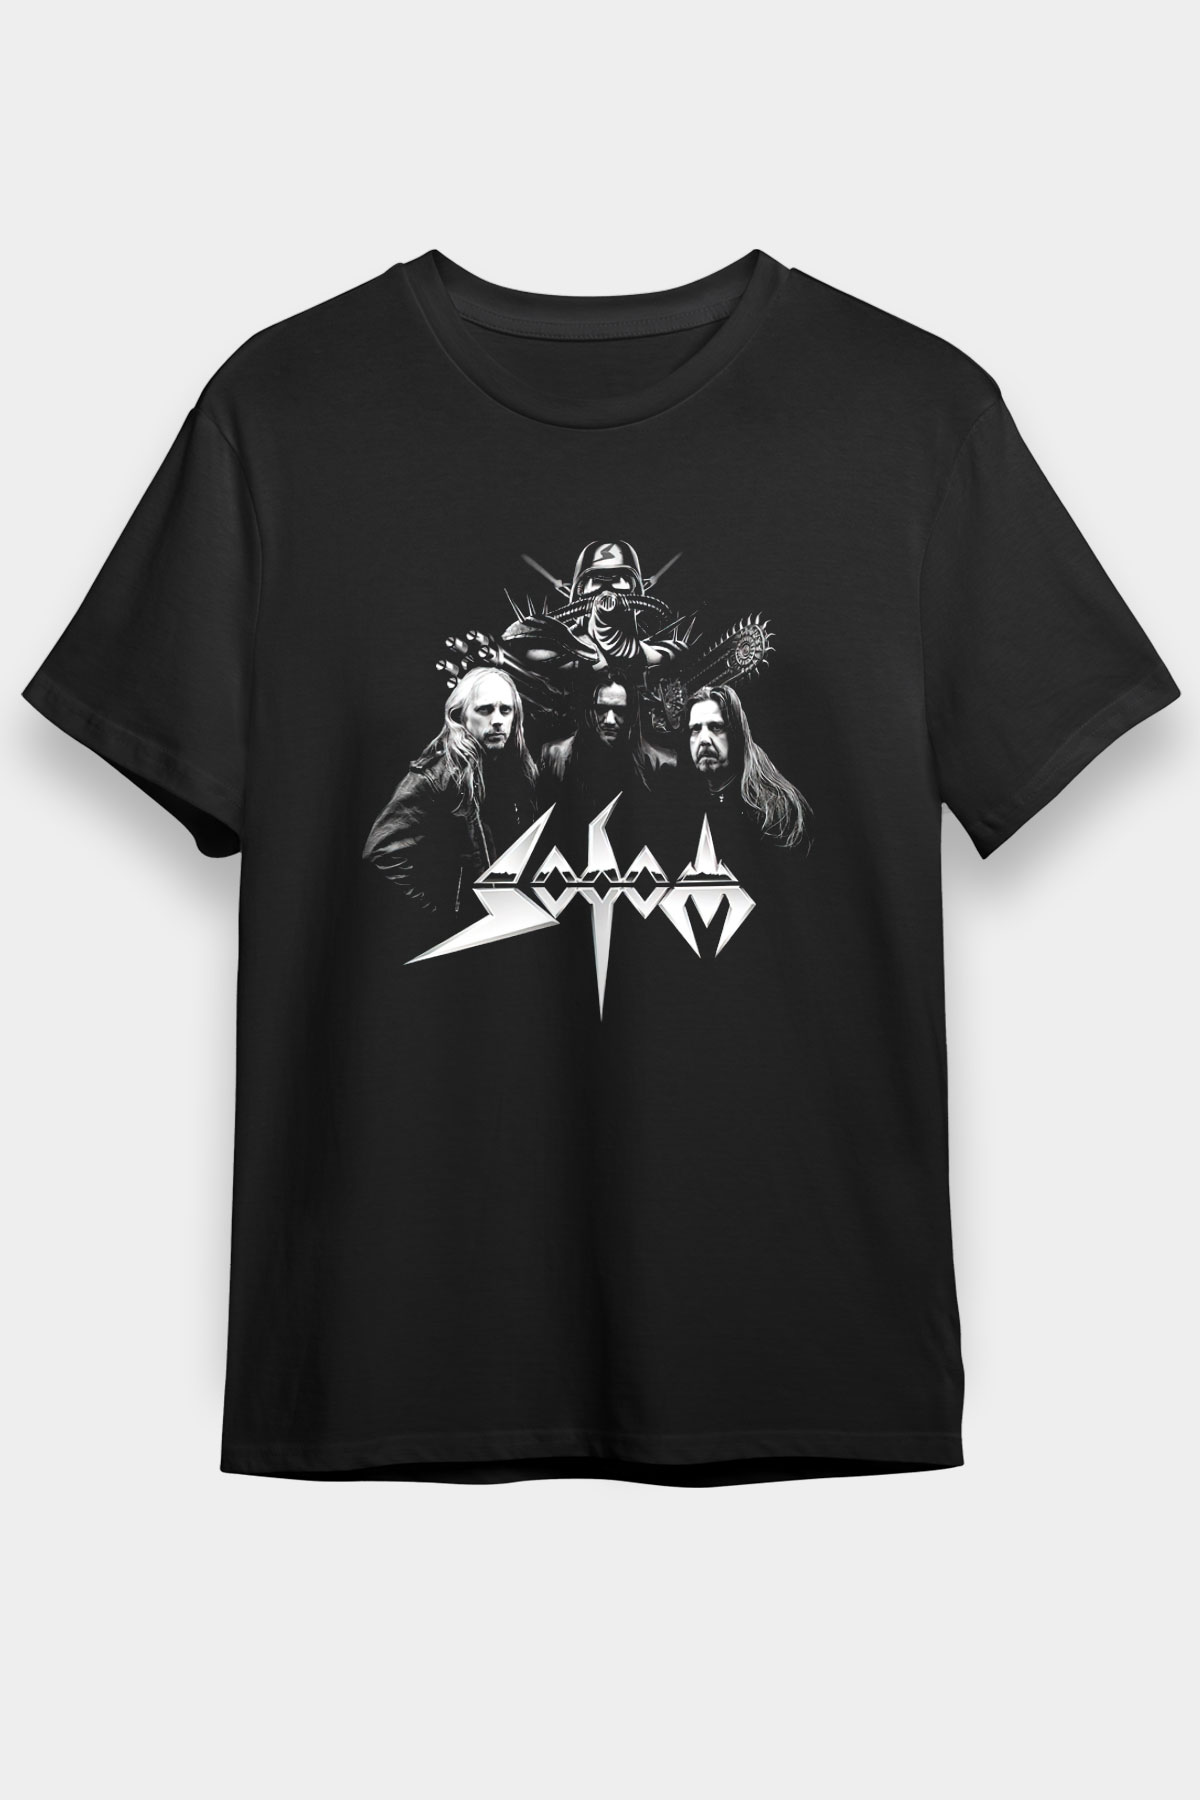 Sodom T shirt, Music Band ,Unisex Tshirt  07